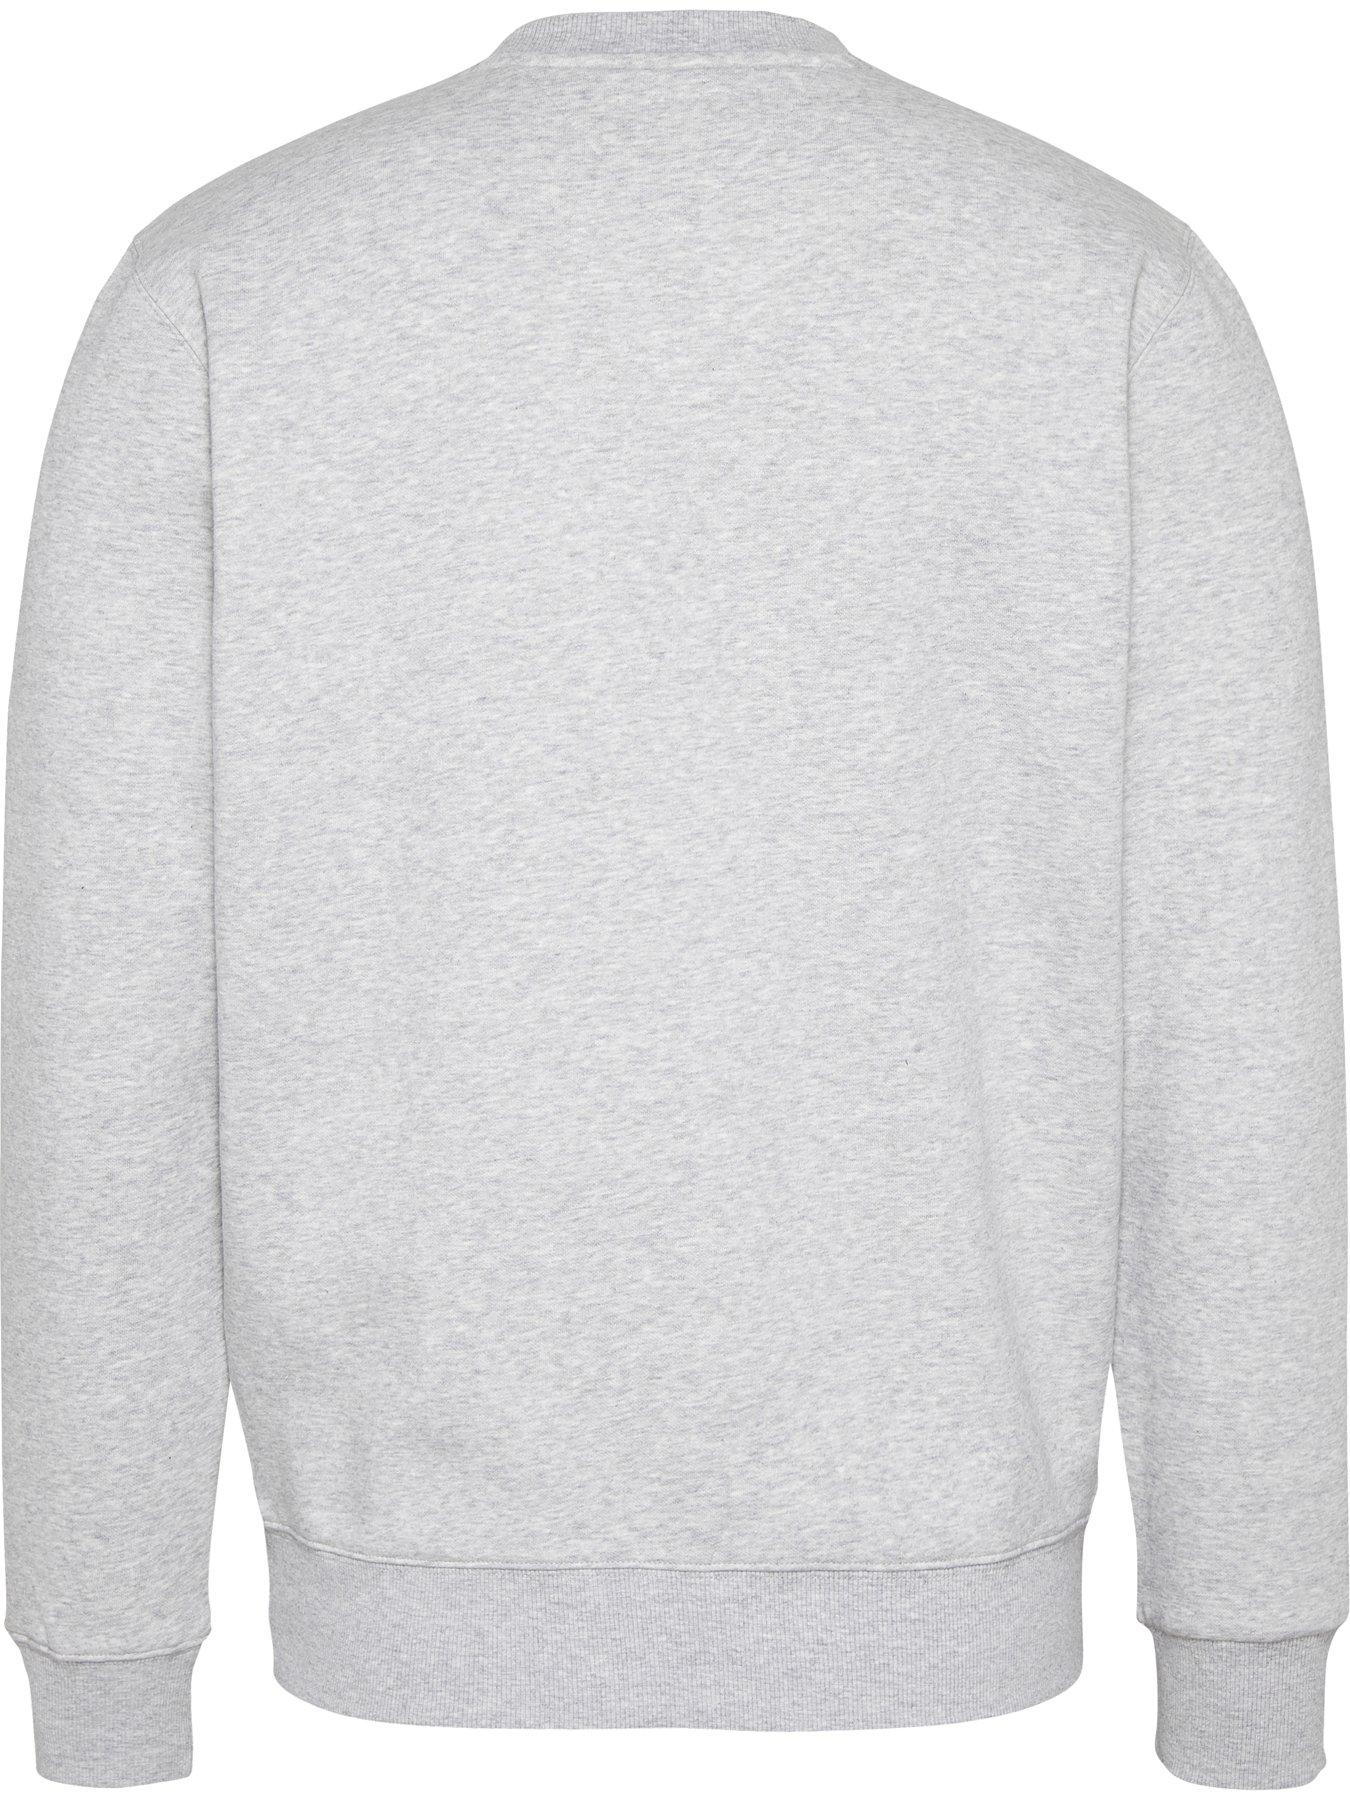 Tommy Jeans Tjm Regular Fleece Sweatshirt - Grey Heather | very.co.uk